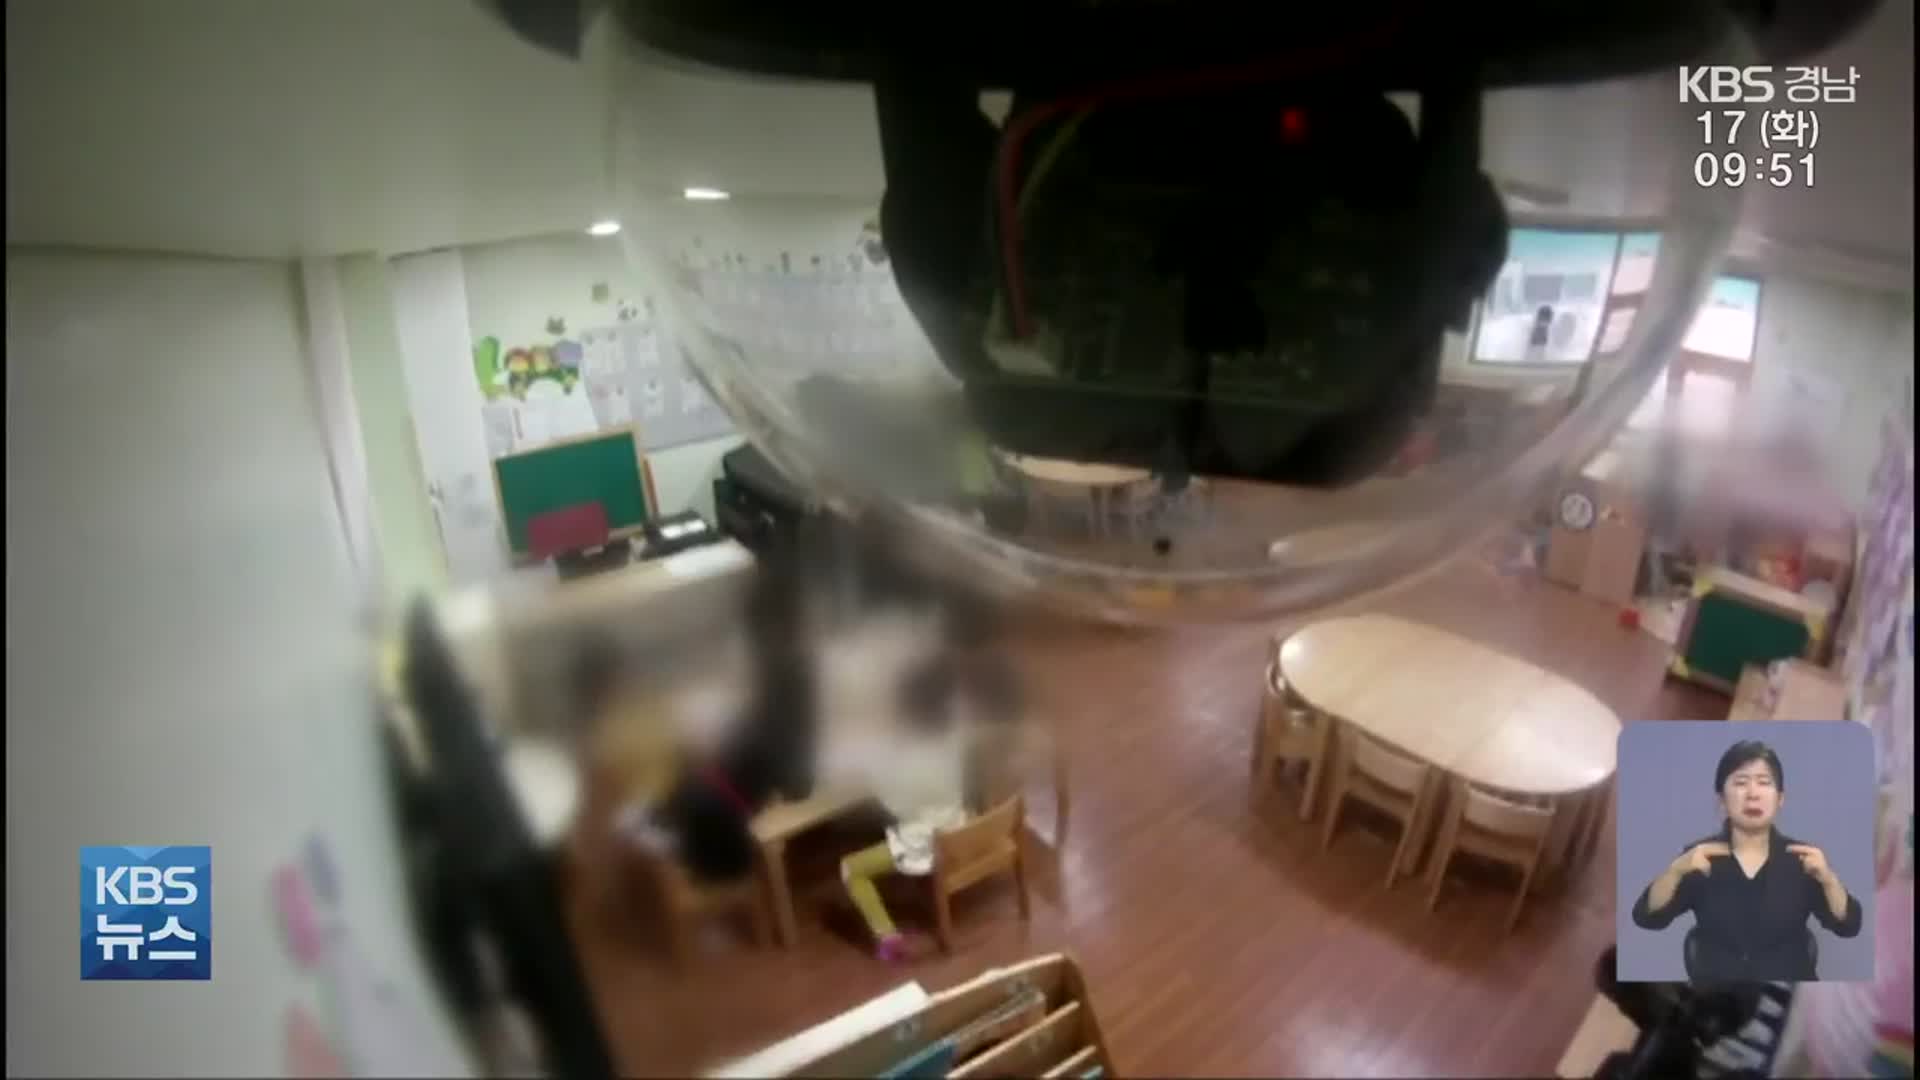 경남 유치원 교실 안 CCTV 27%…그마저도 무용지물